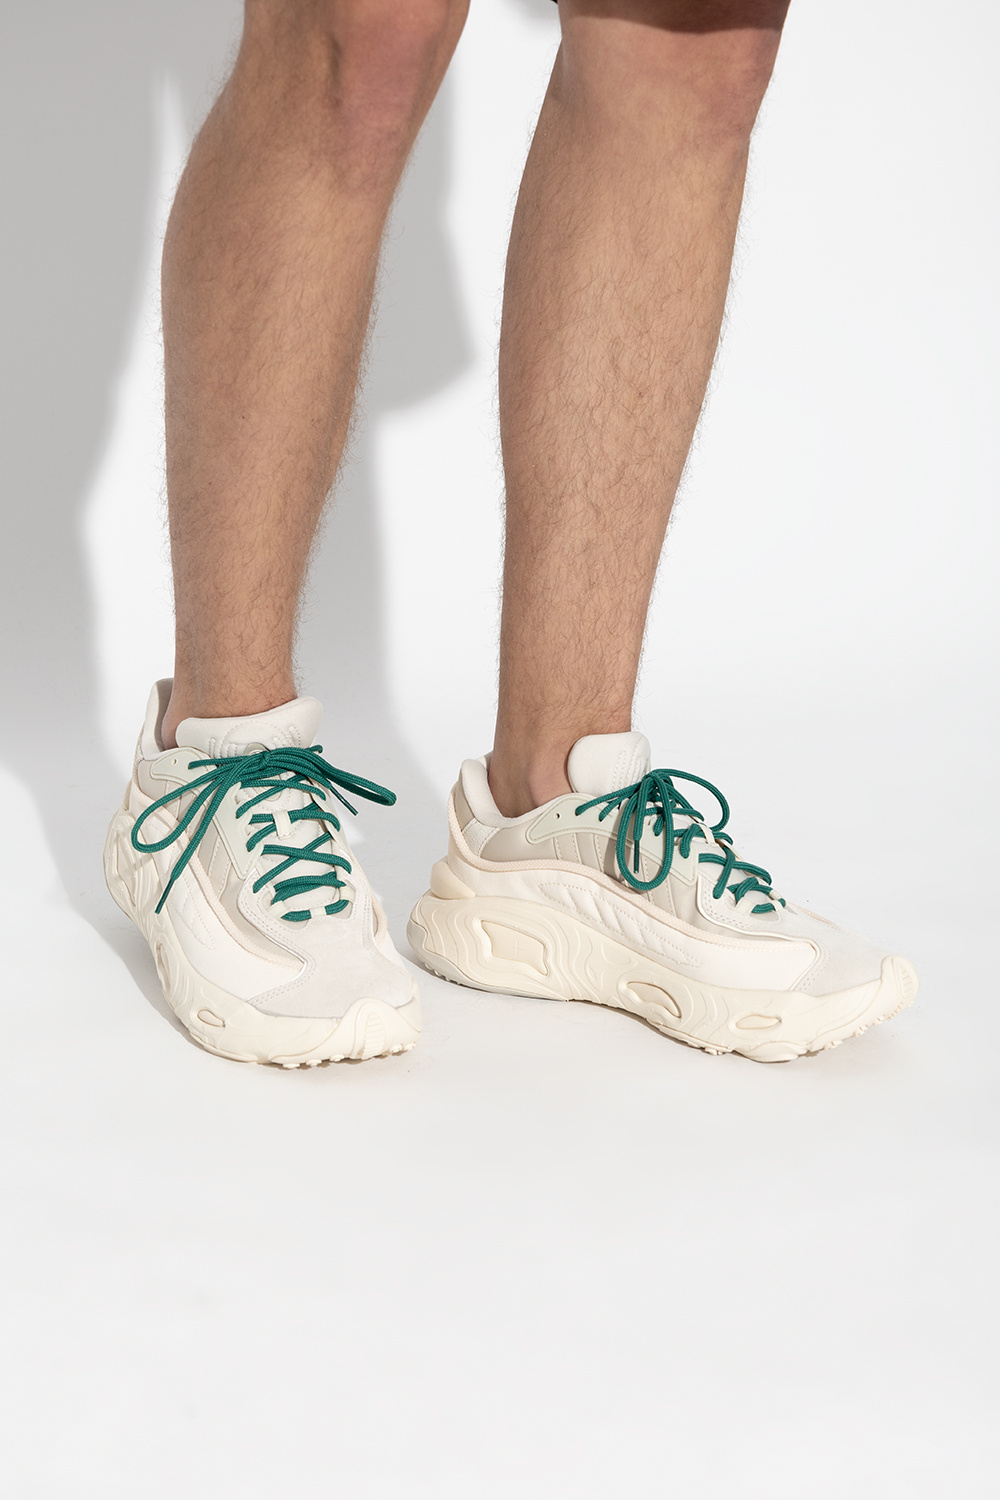 adidas clair Originals ‘Oznova’ sneakers